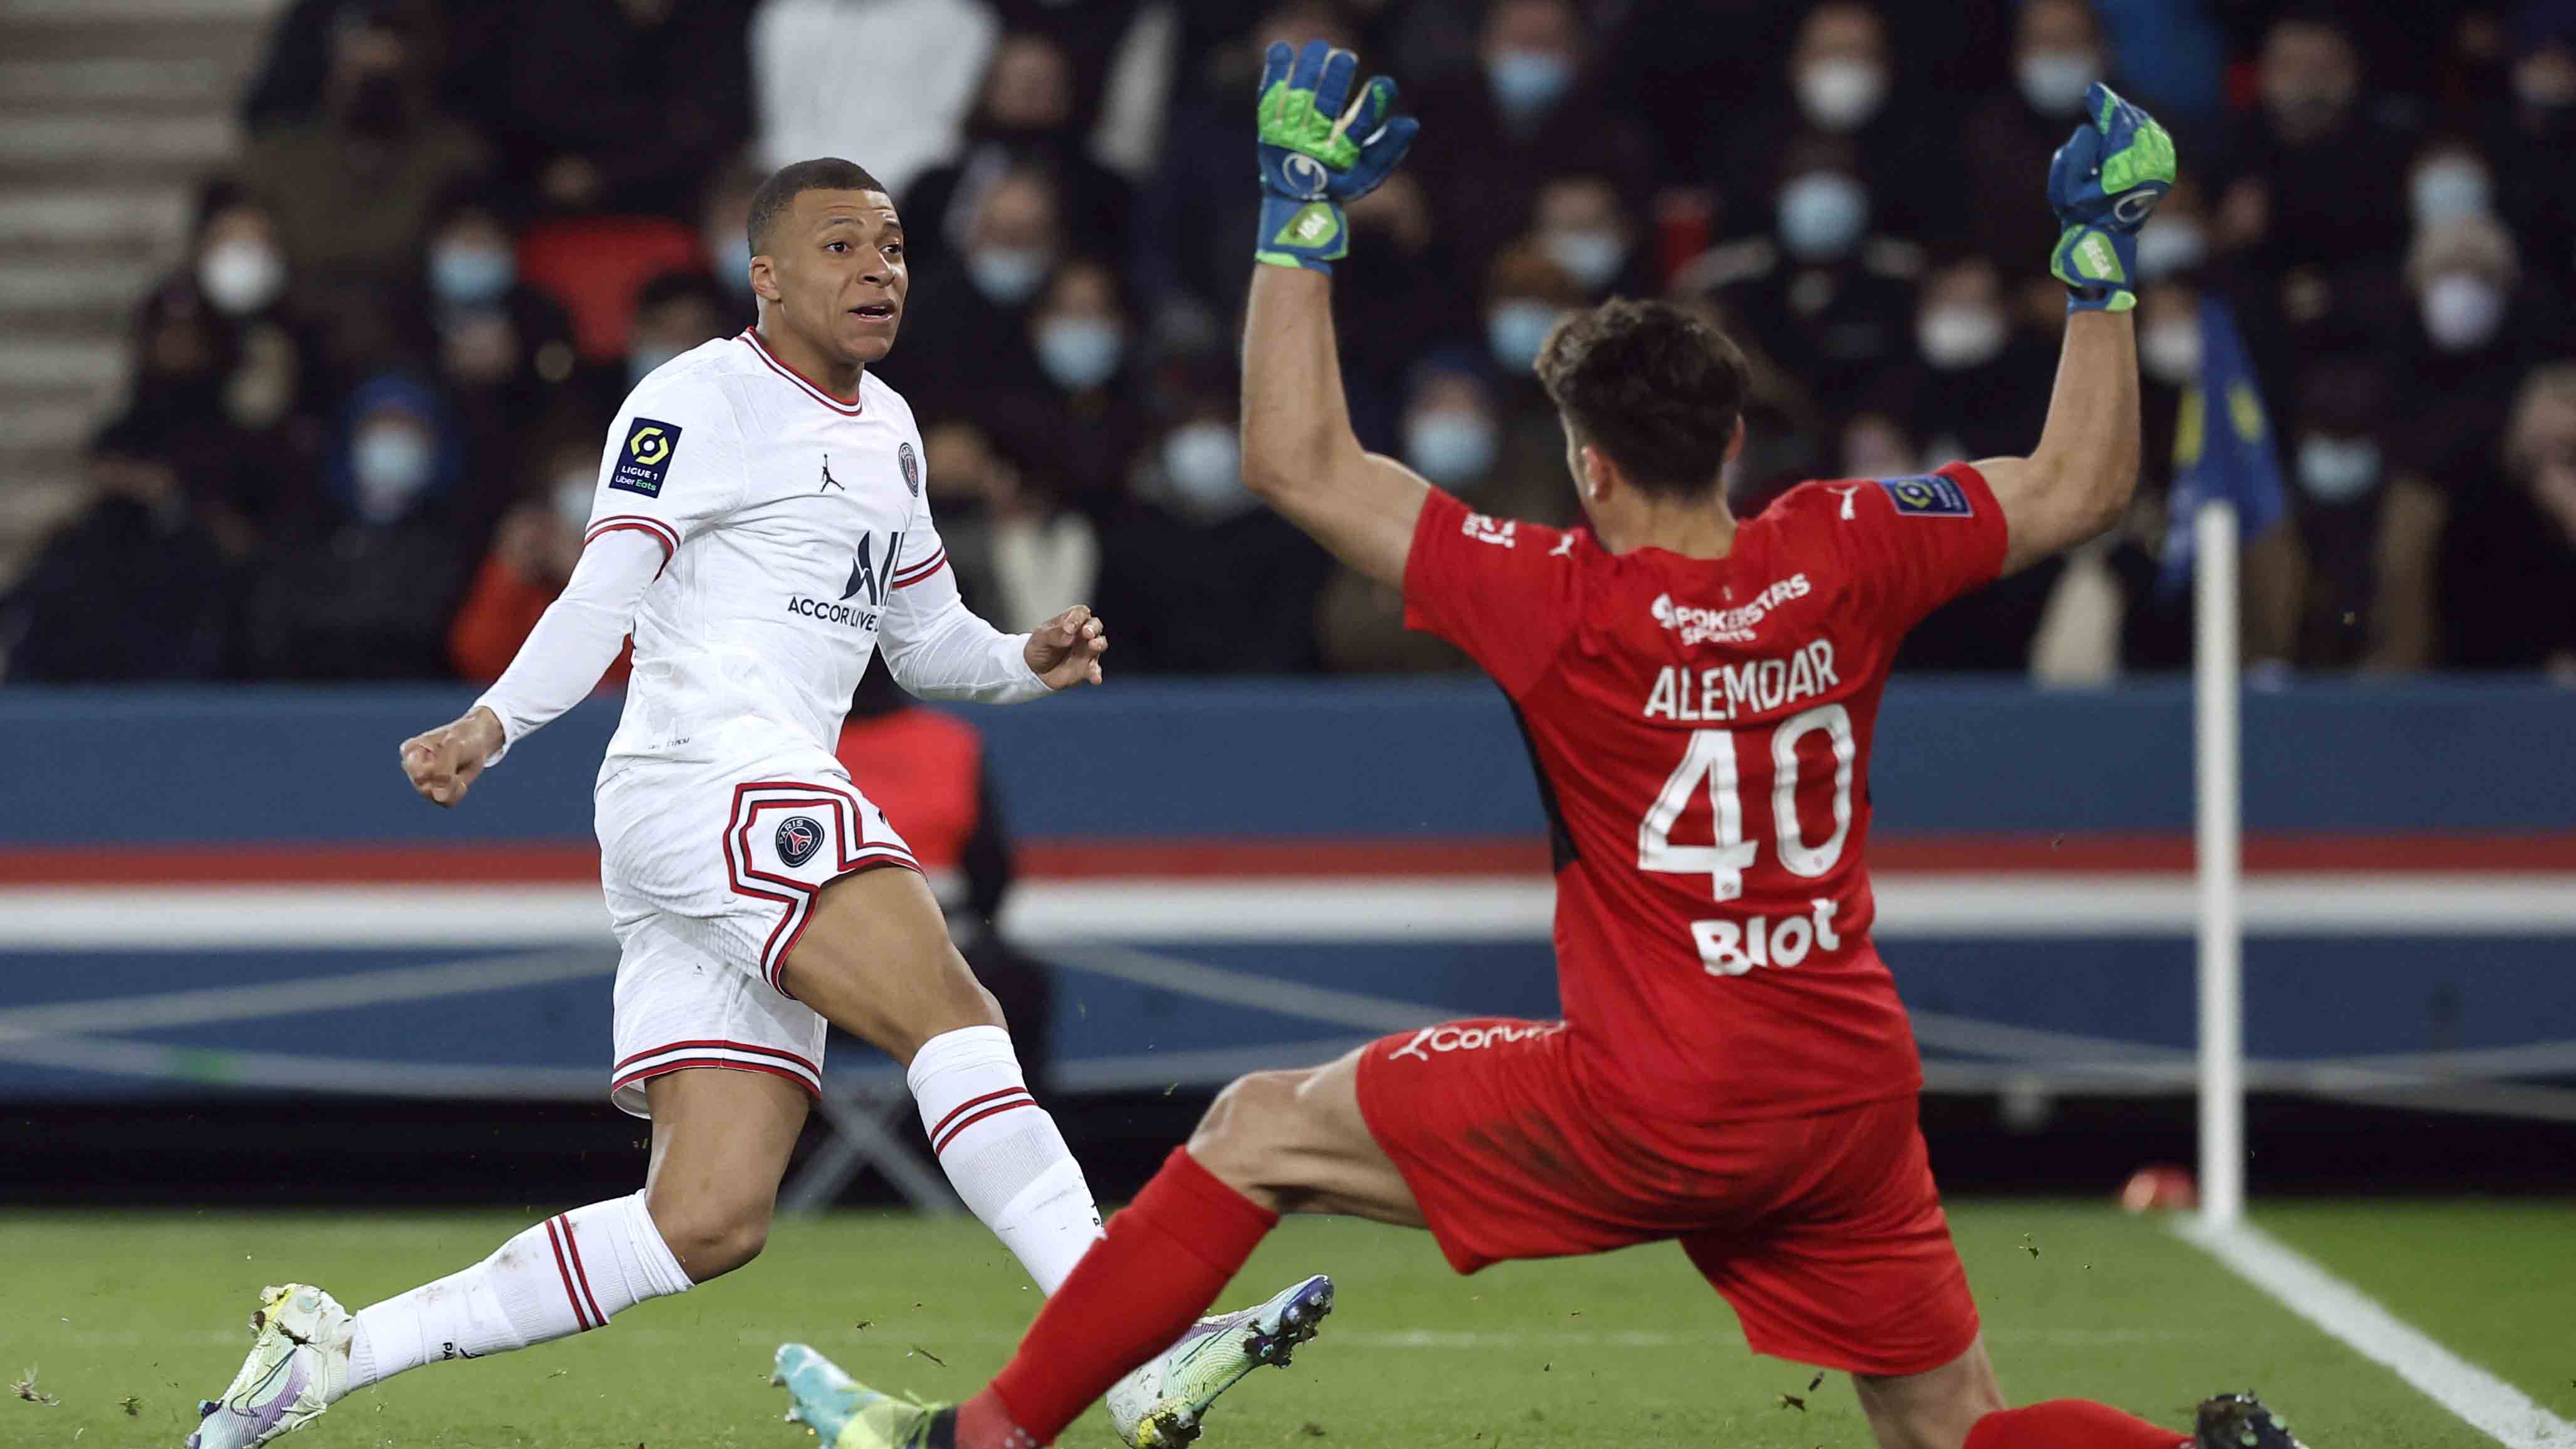 PSG vs Rennes, 11 de febrero, Jornada 24 de la Ligue 1: Kylian Mbappé anota el 1-0 al minuto 93.